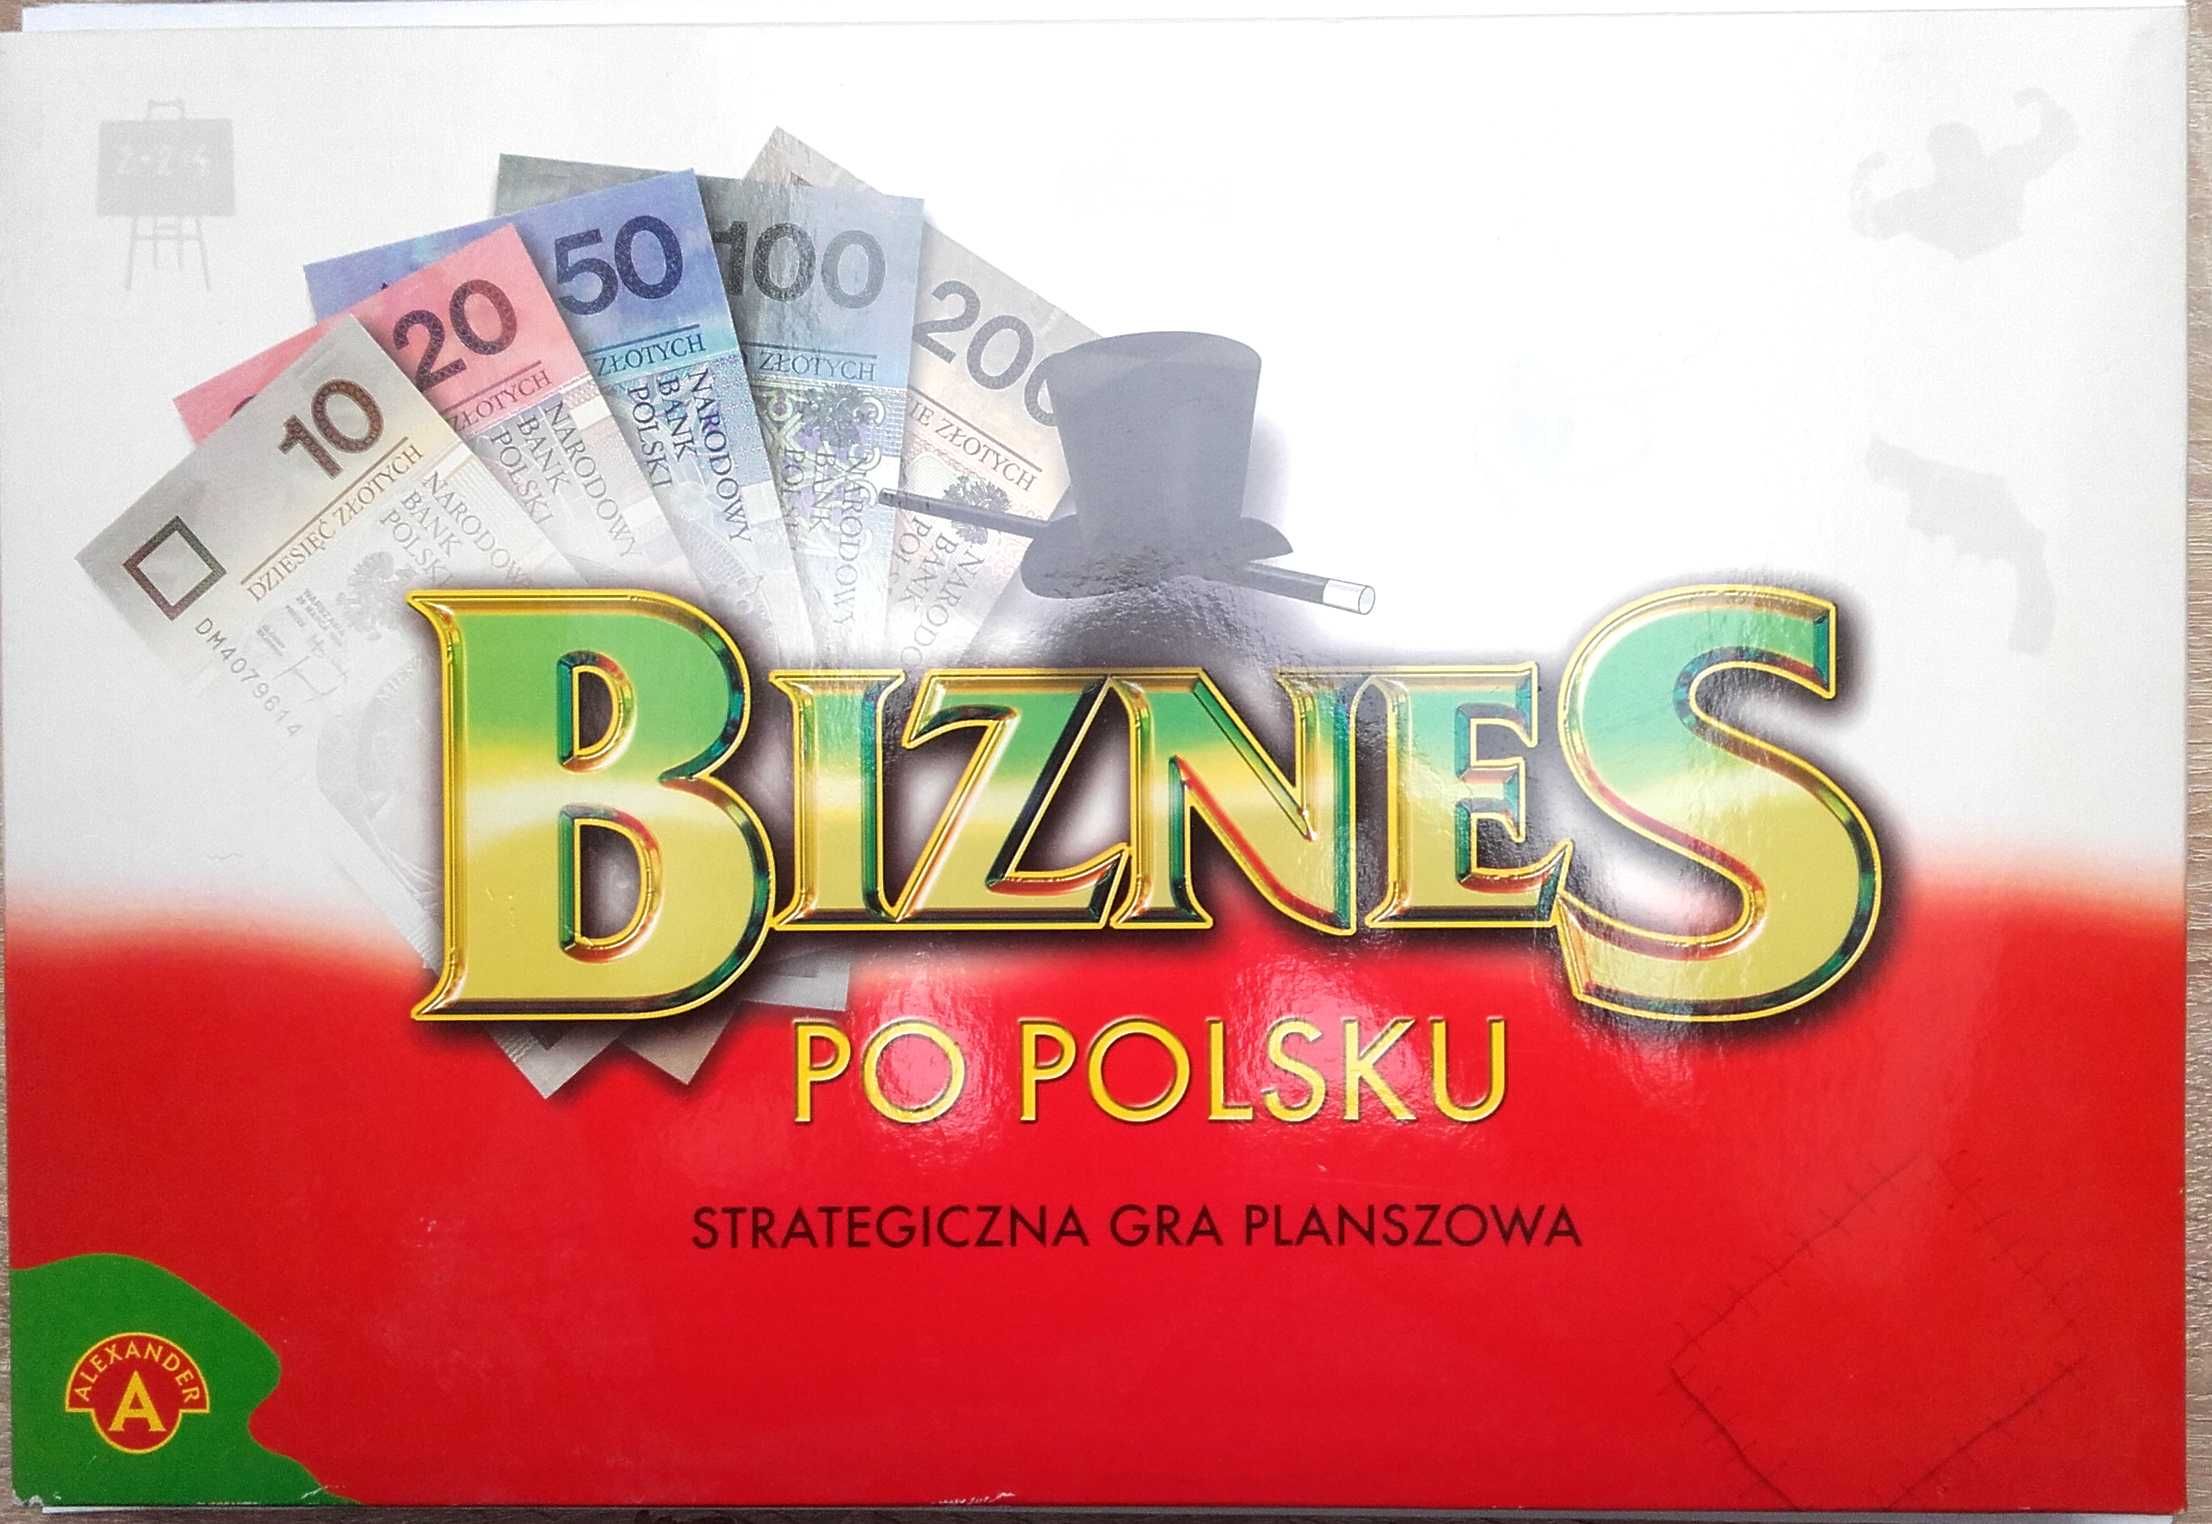 Biznes po polsku gra planszowa strategiczna edukacyjna monopoly